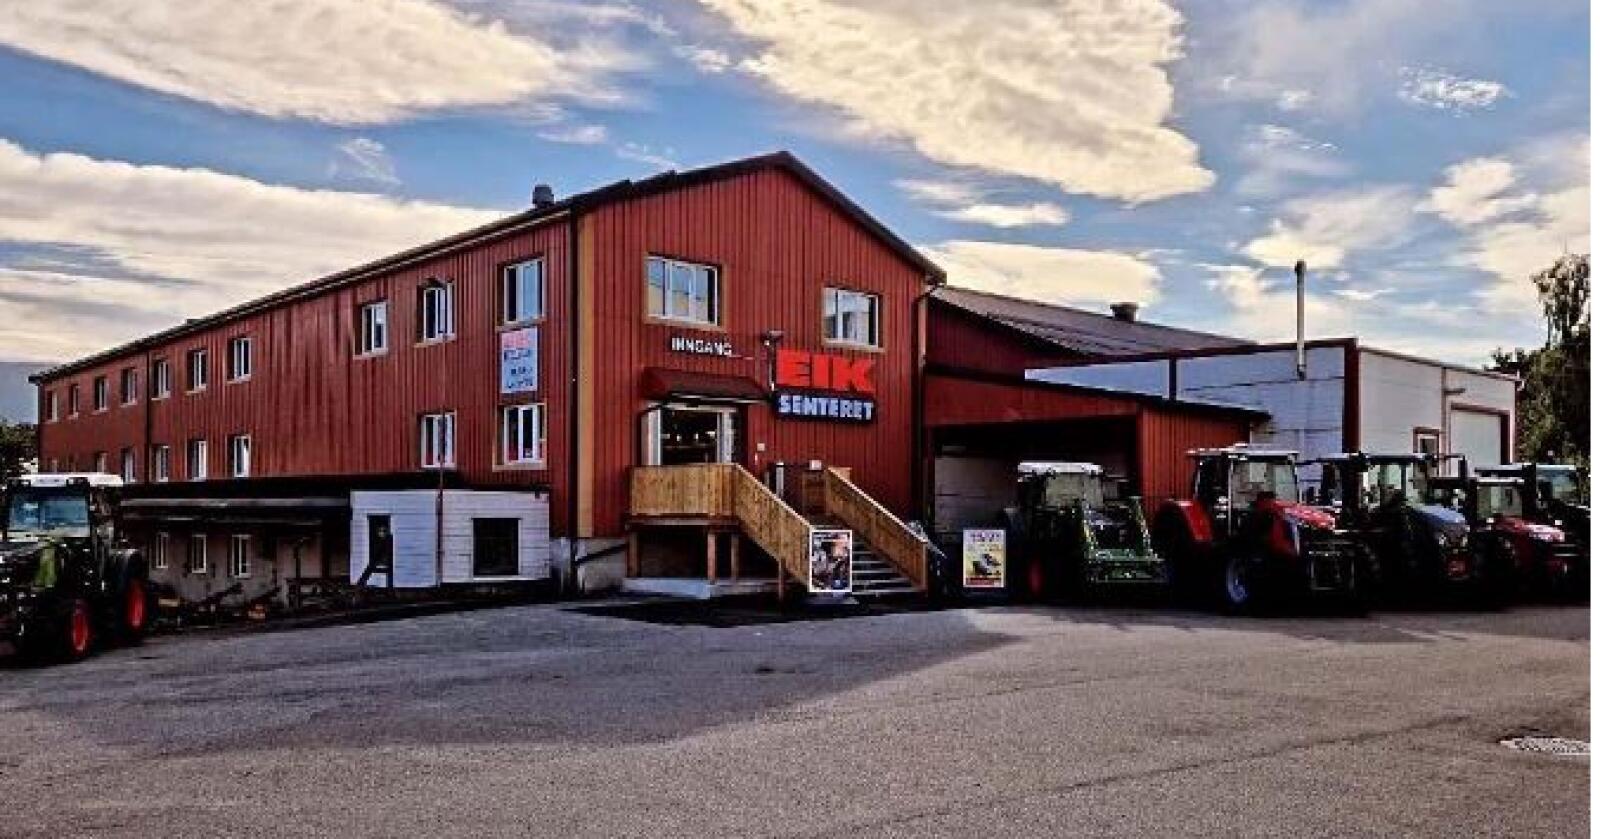 Nyåpning: Eiksenteret i Lier flytter, og har 19. august nyåpning i den gamle konservesfabrikken i Lier